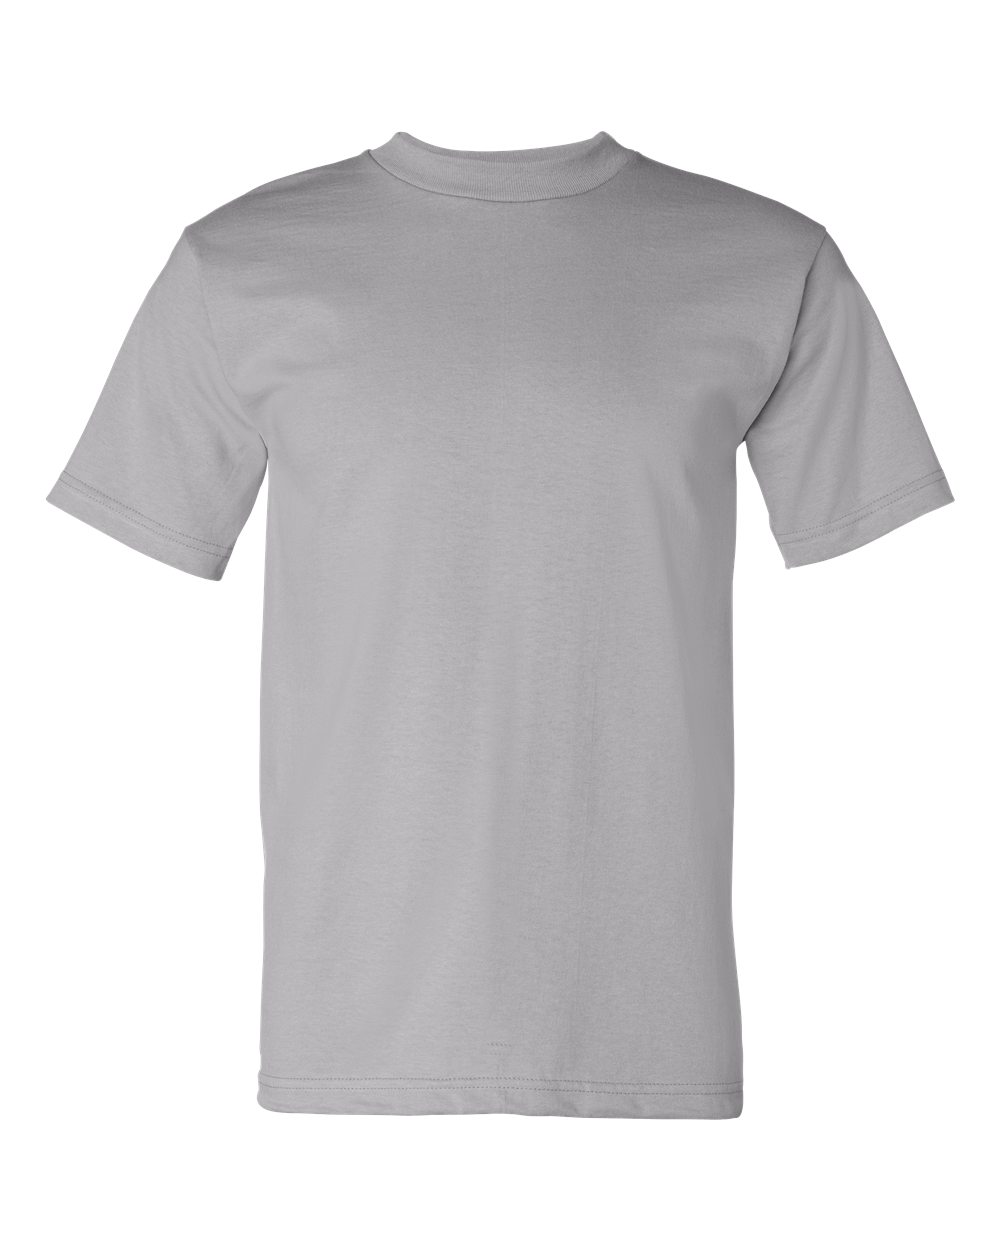 mens tshirts USA-Made T-Shirt